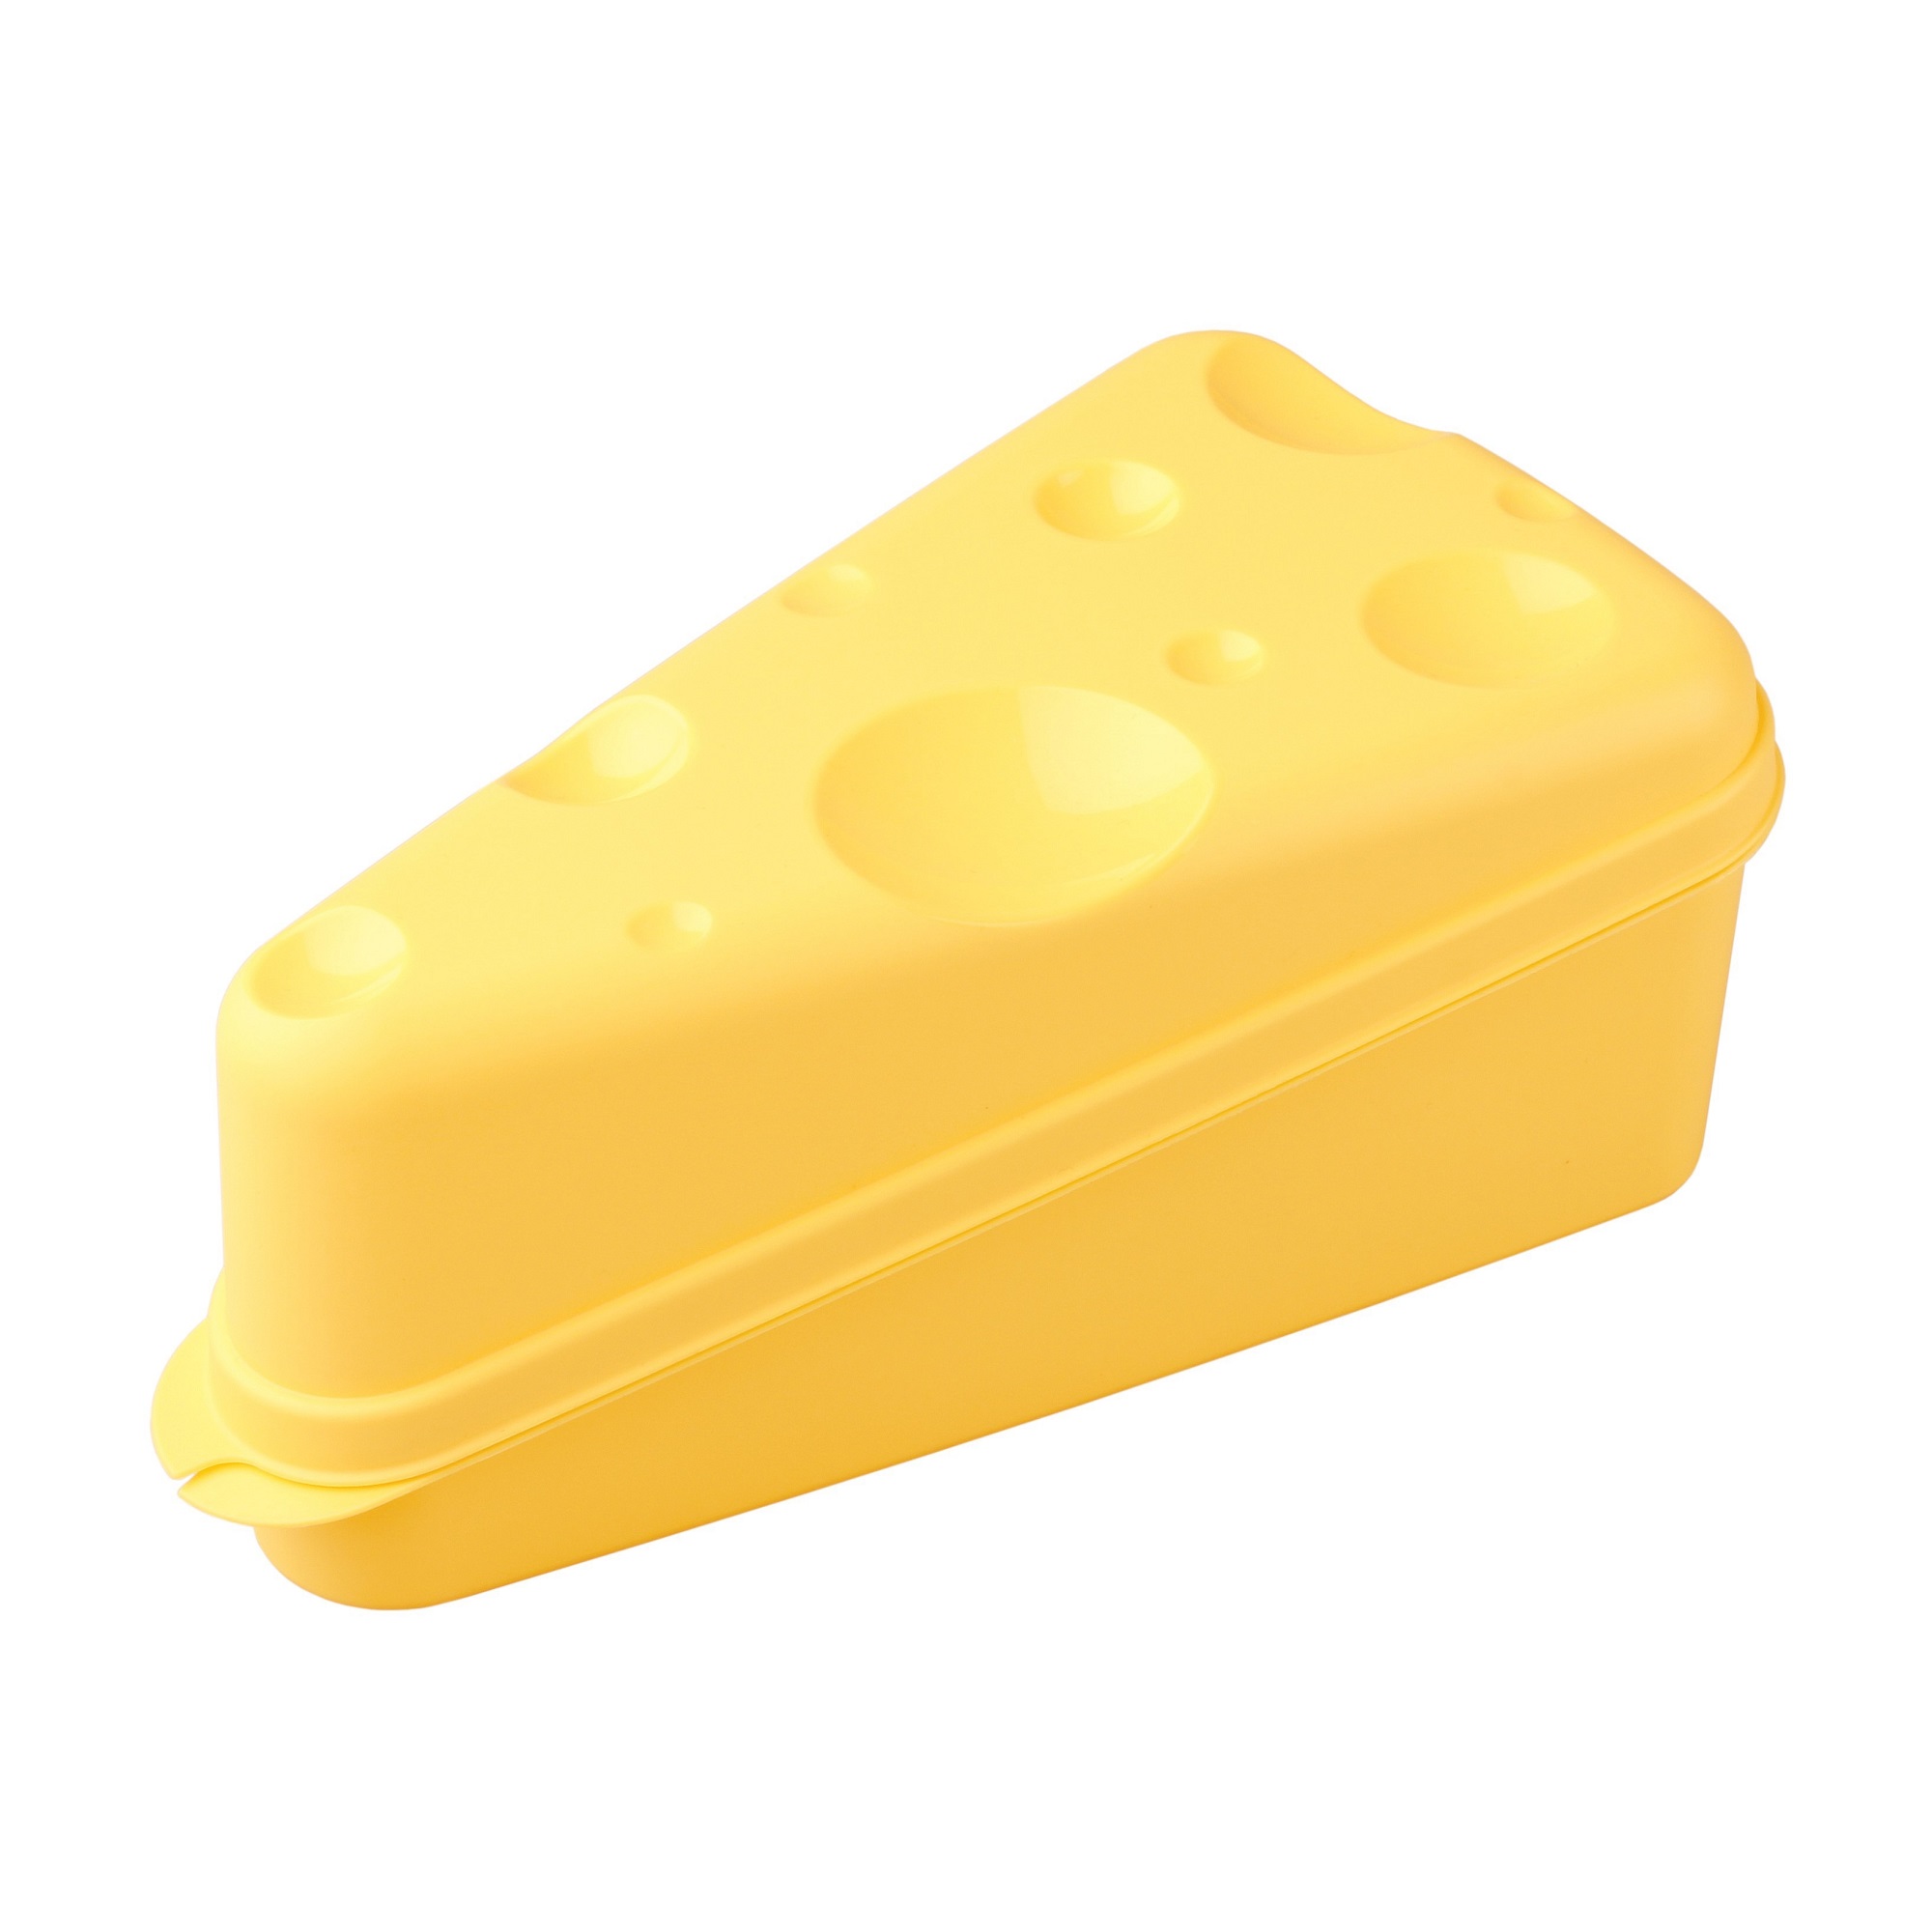 Контейнер Бытпласт для сыра (4312951) контейнер для специй бытпласт